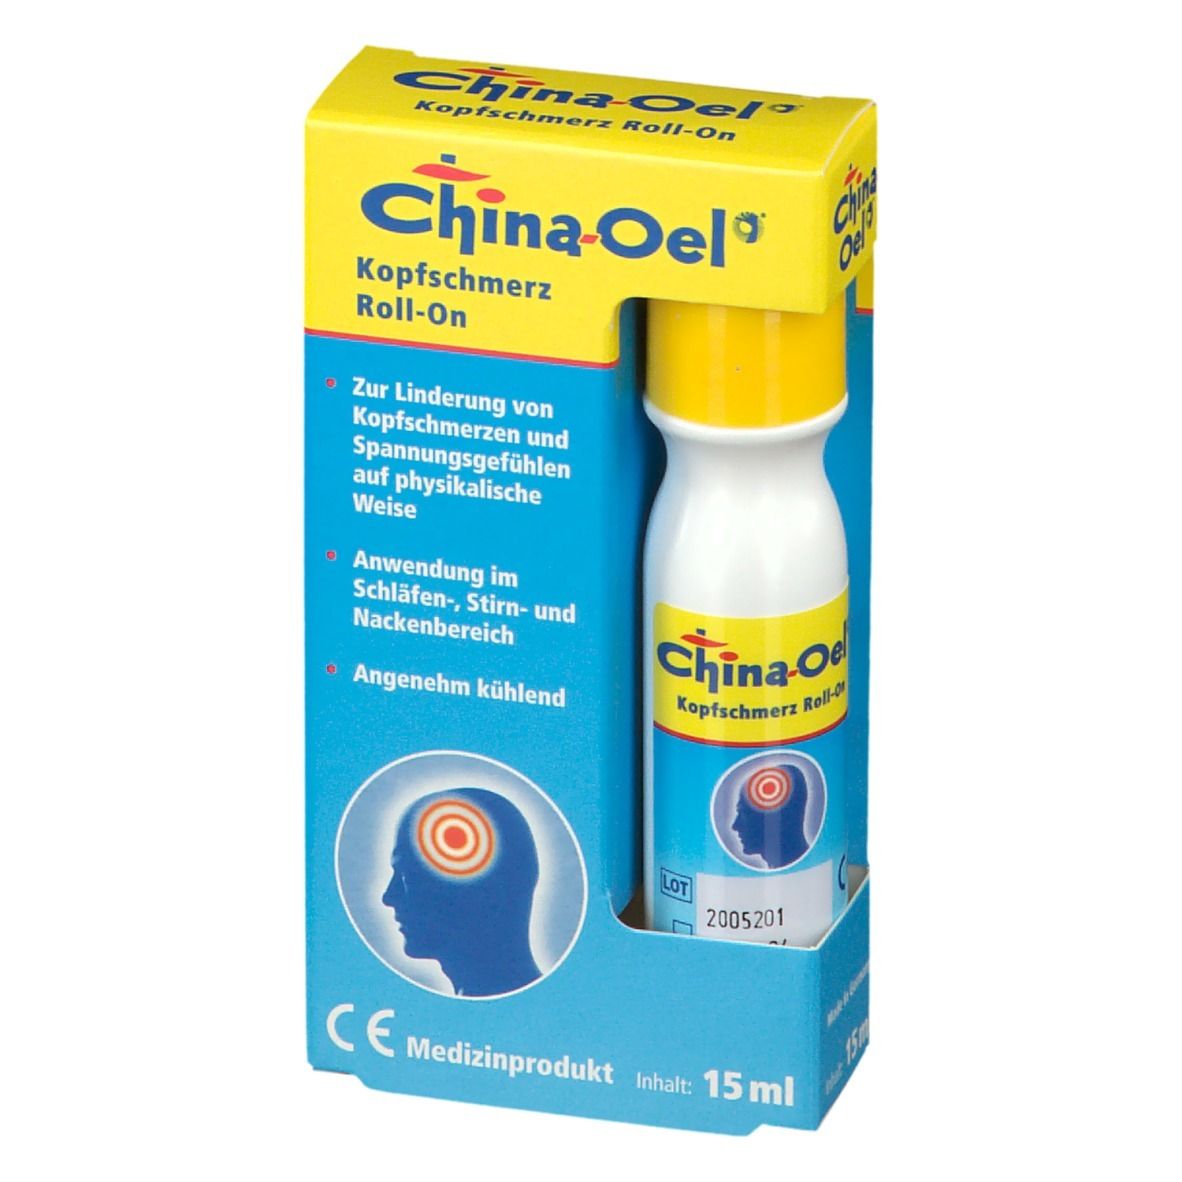 China-Oel® Kopfschmerz Roll-On